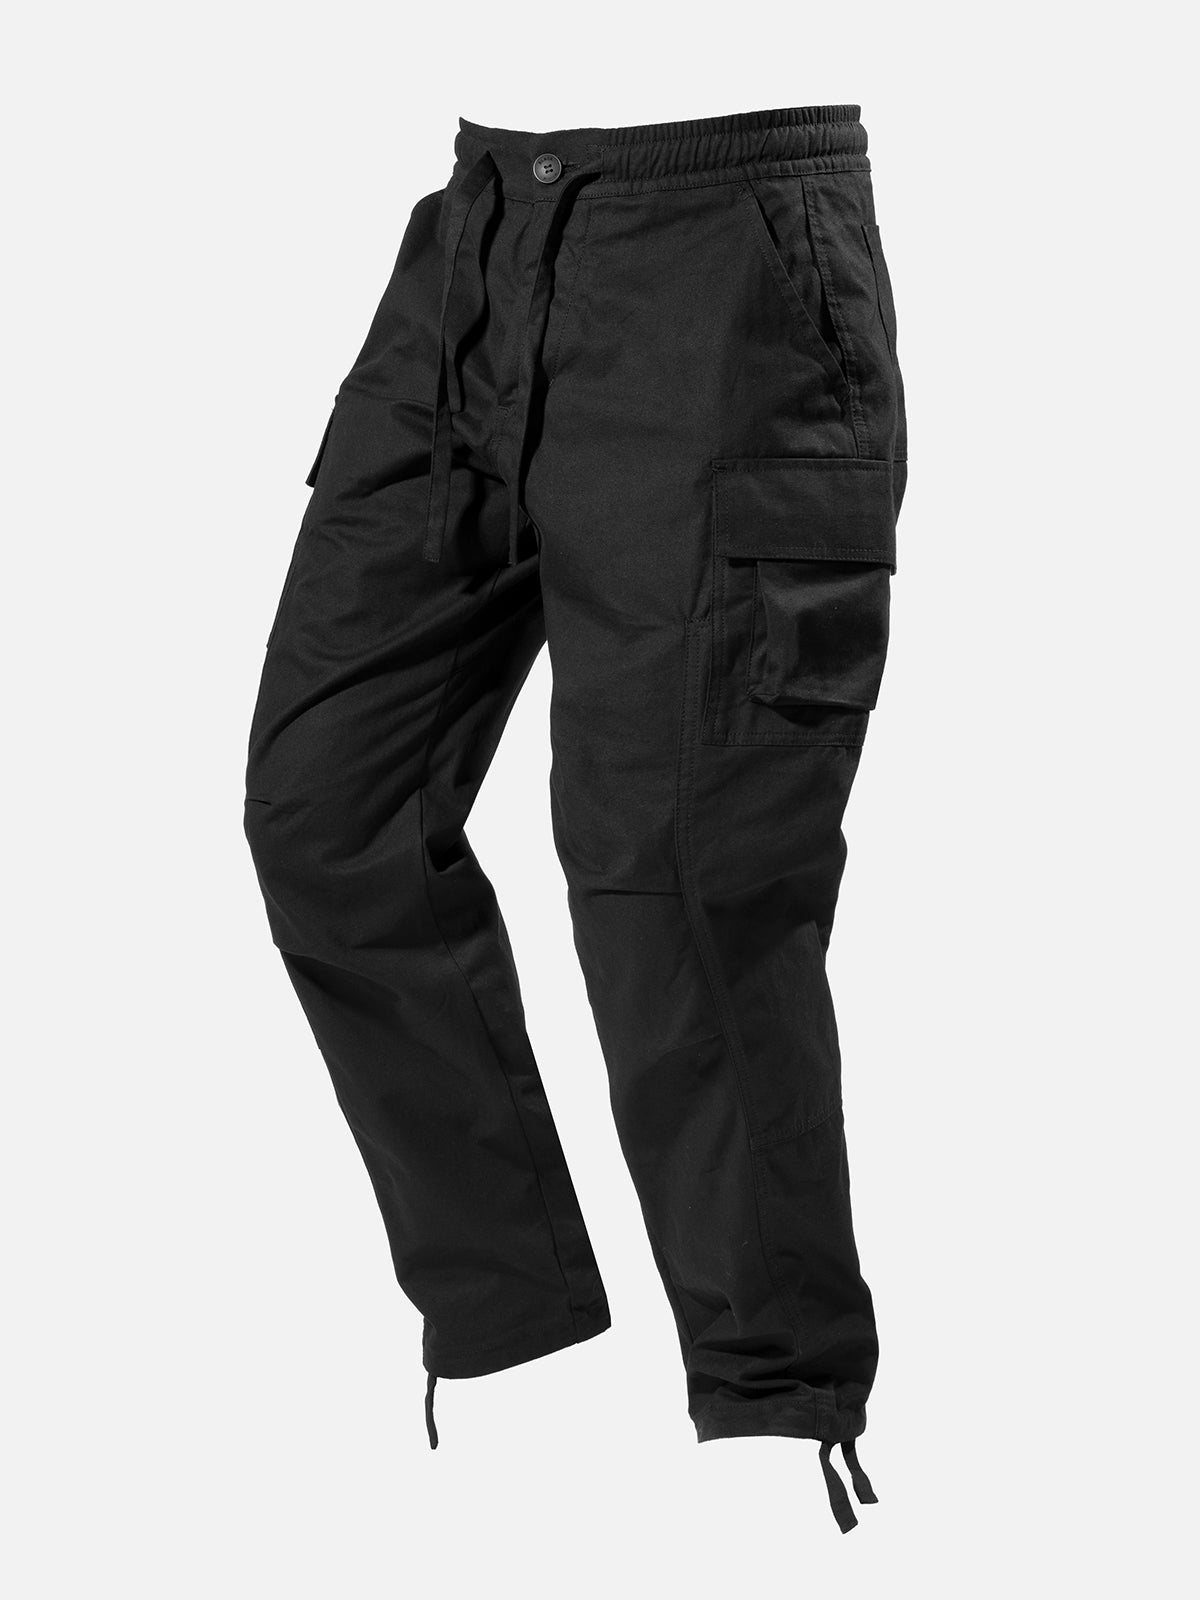 N36 Cargo Pants - Khaki  Blacktailor – BLACKTAILOR